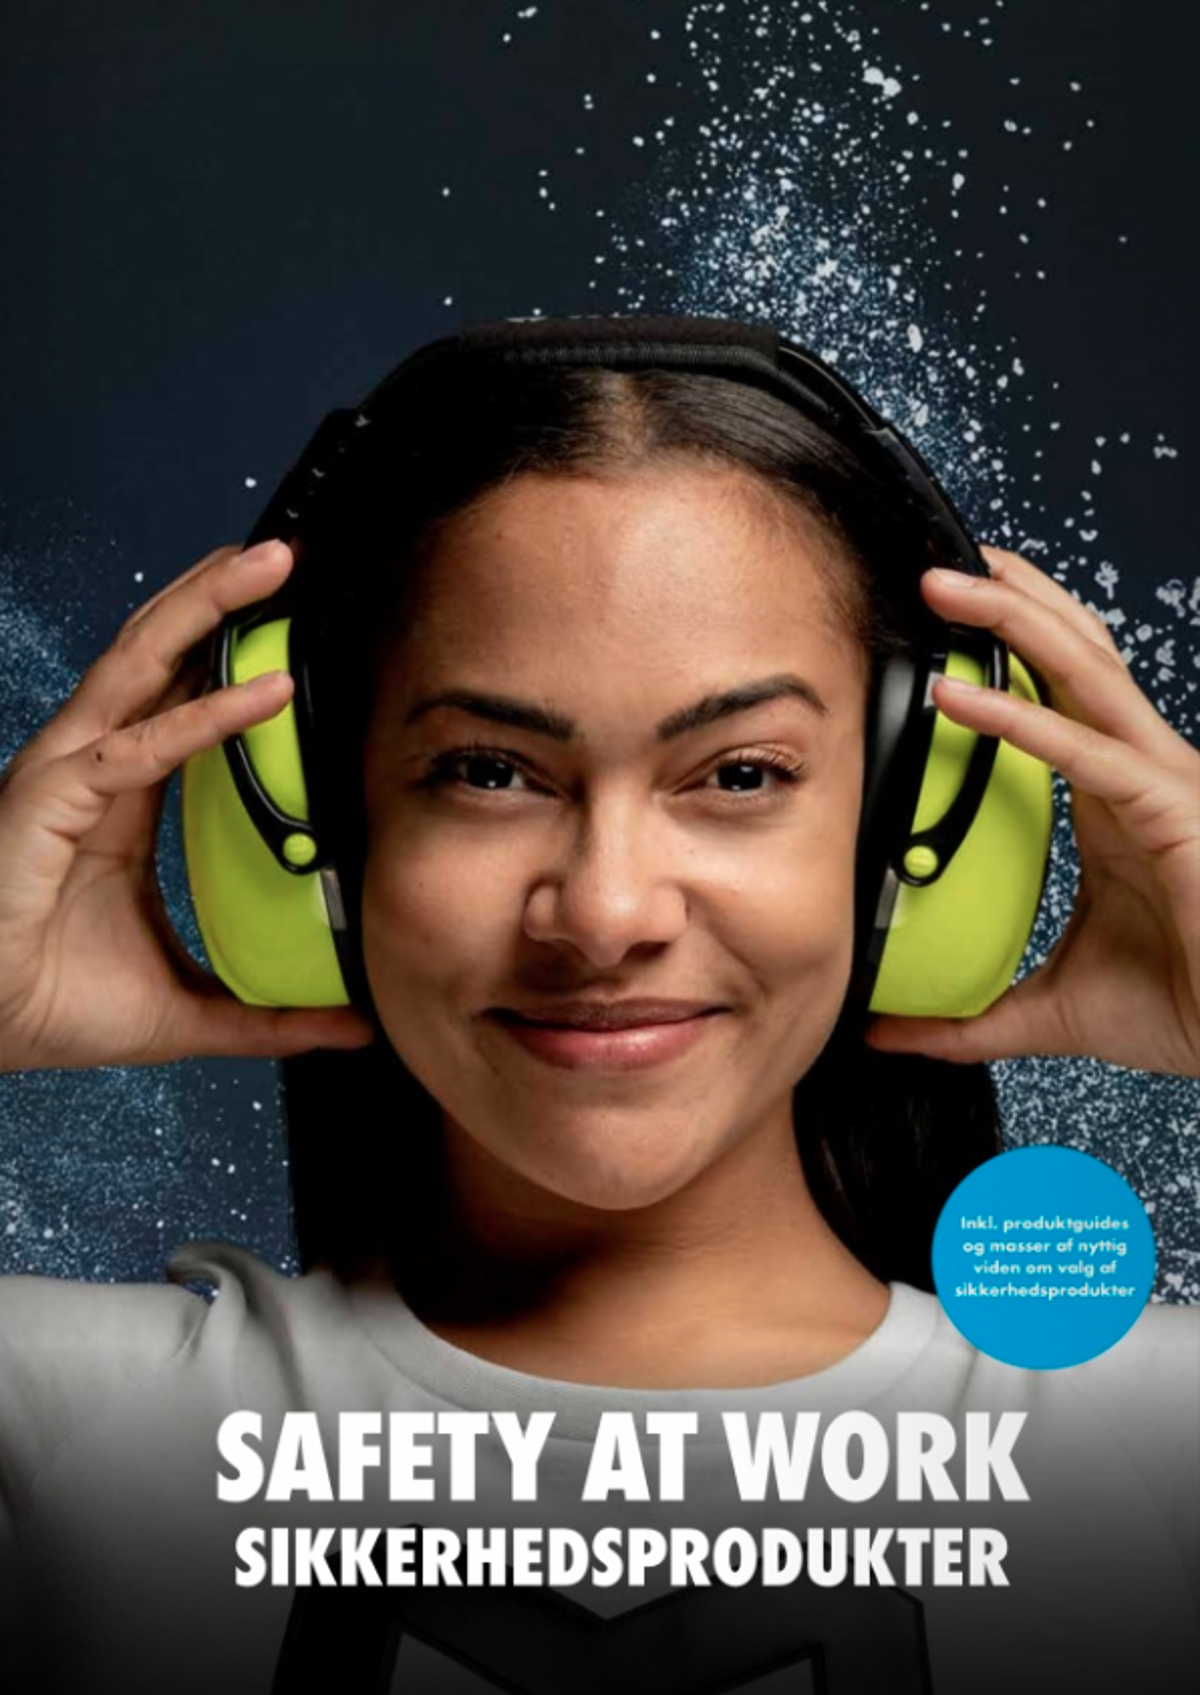 Safety at work - sikkerhedsprodukter